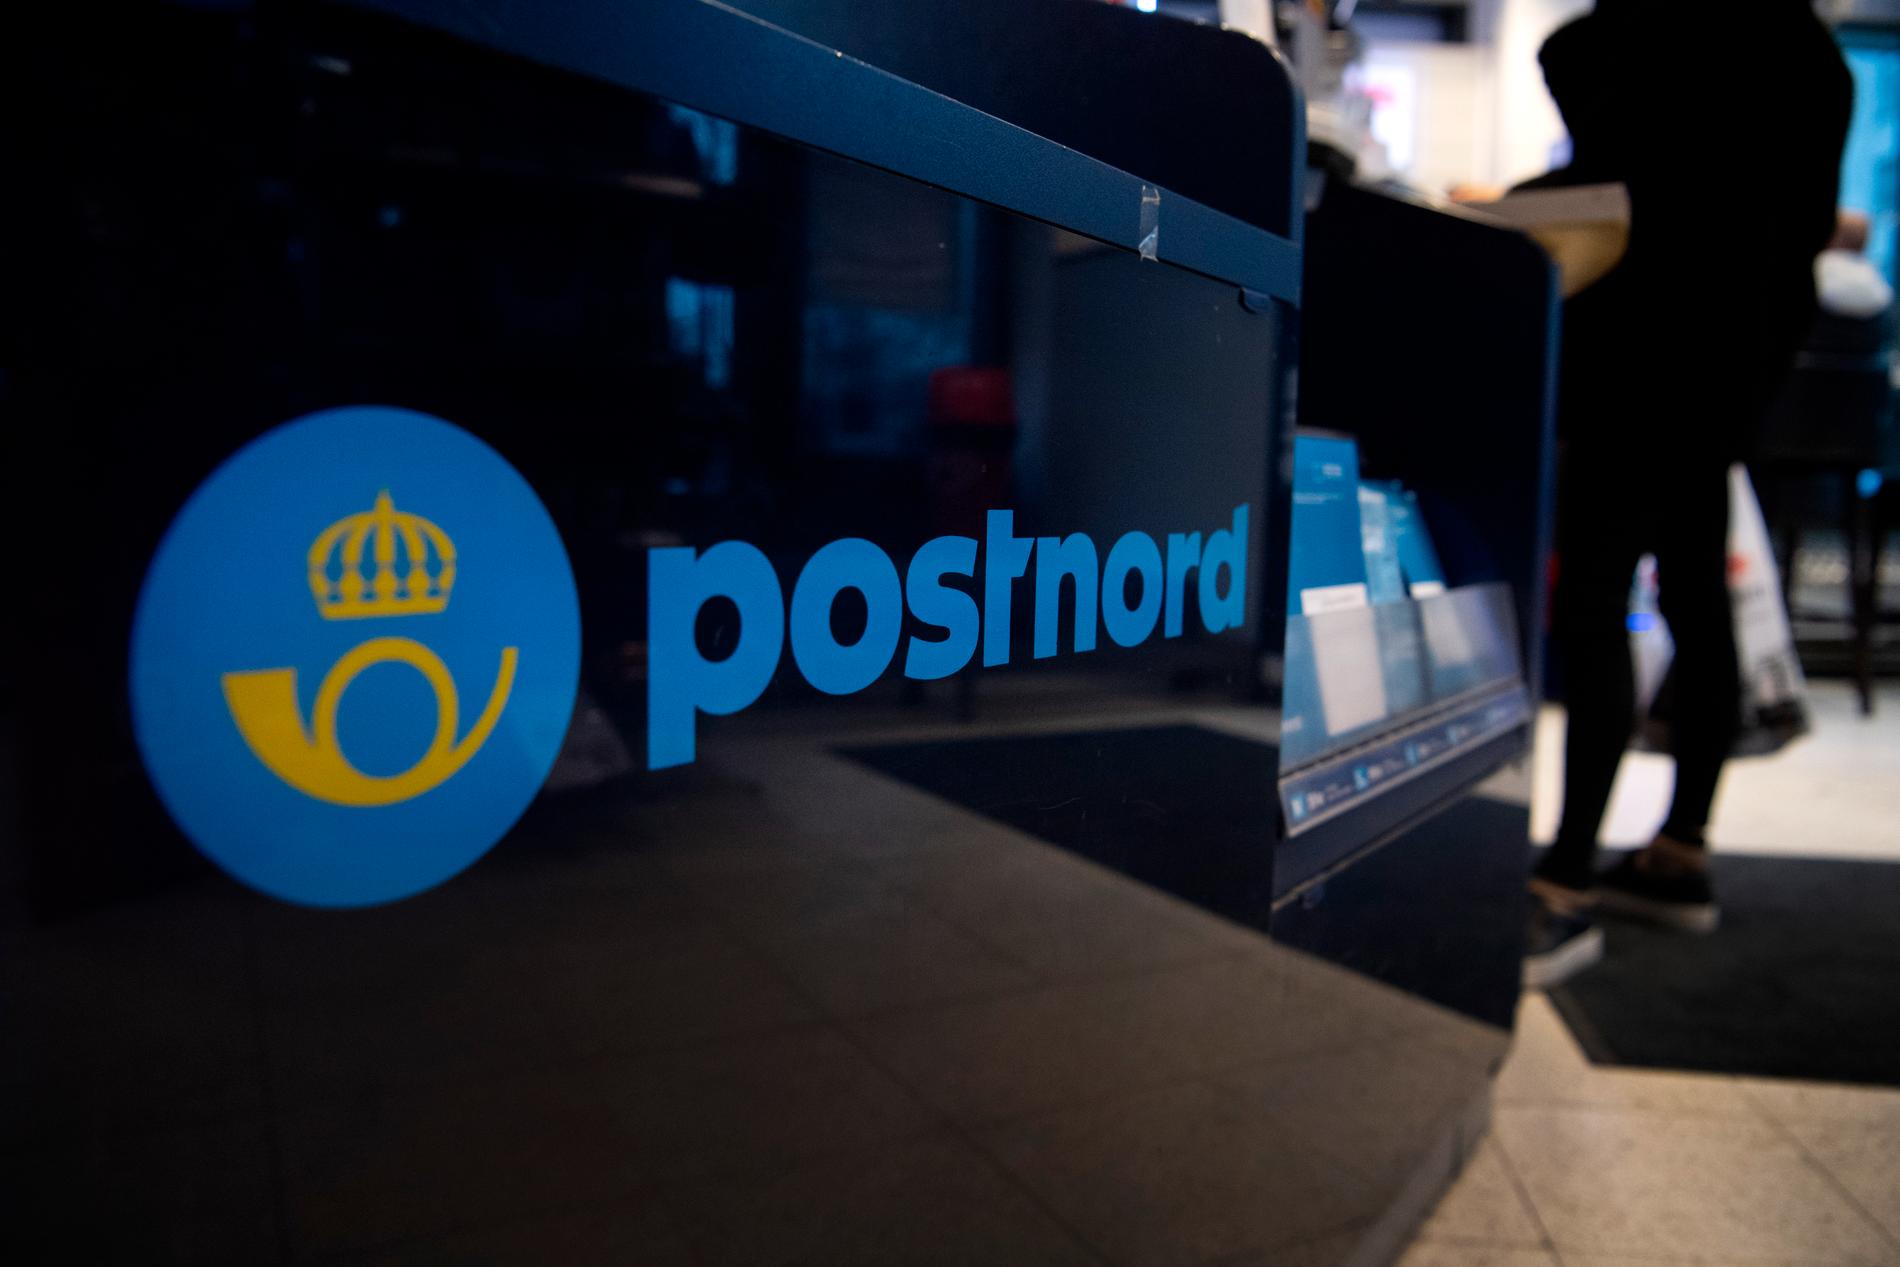 Postnord säljer ett norrländskt dotterbolag, Postnord Termo AB, som levererar dagligvaror i norra Sverige. Arkvibild